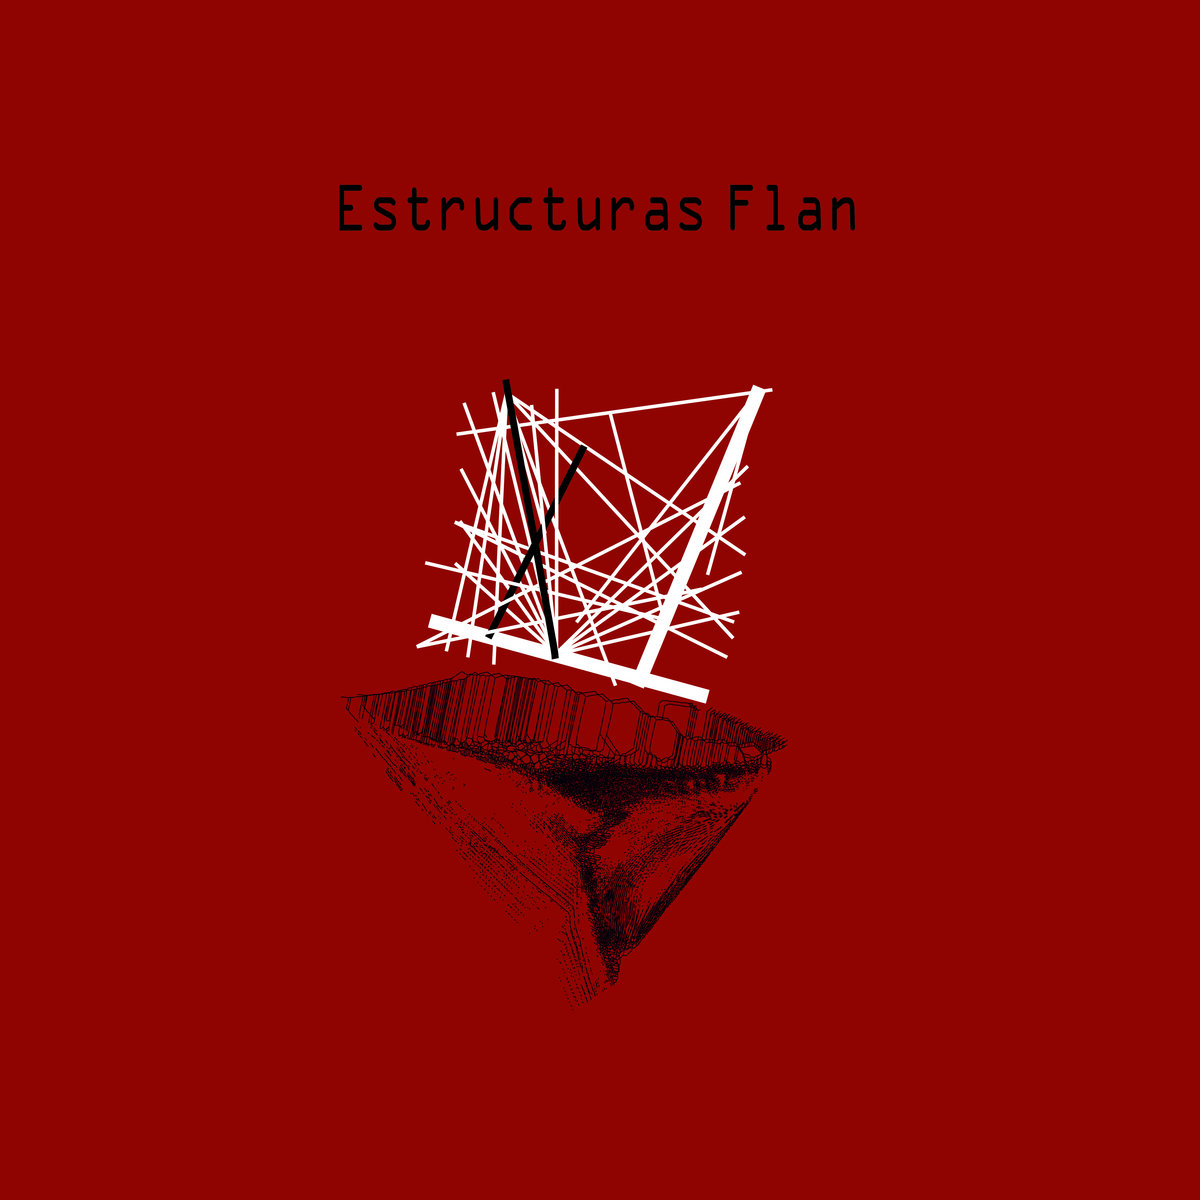 Estructuras Flan "Estructuras Flan" LP